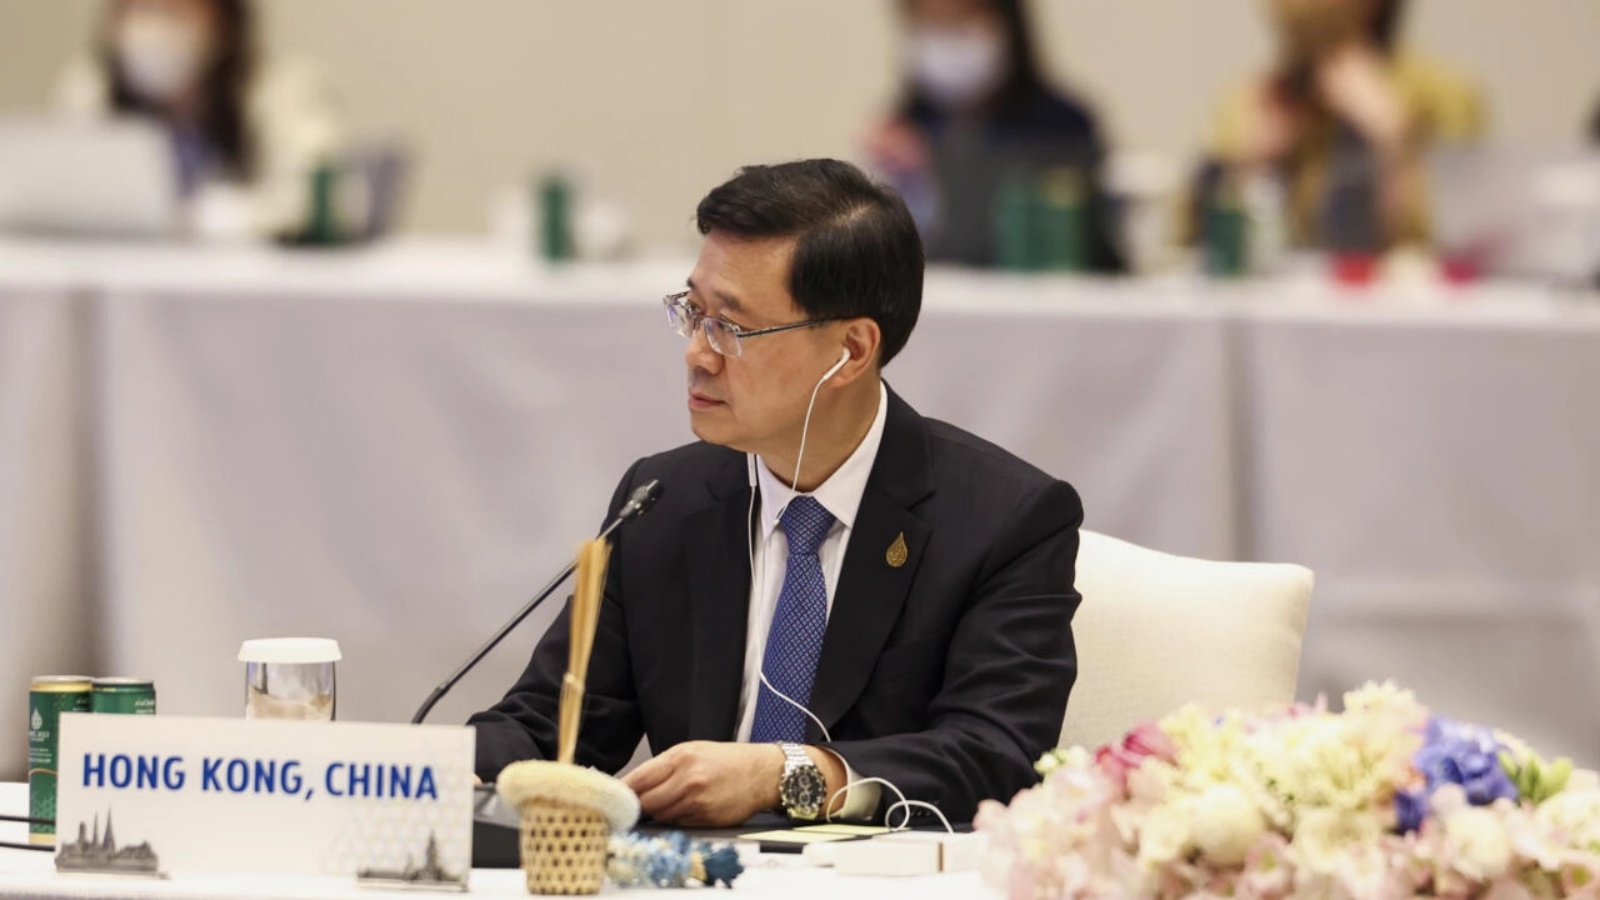 المسؤول التنفيذي لهونغ كونغ جون لي خلال مشاركته في اجتماع على هامش قمة ابيك، في بانكوك في 18 نوفمبر 2022